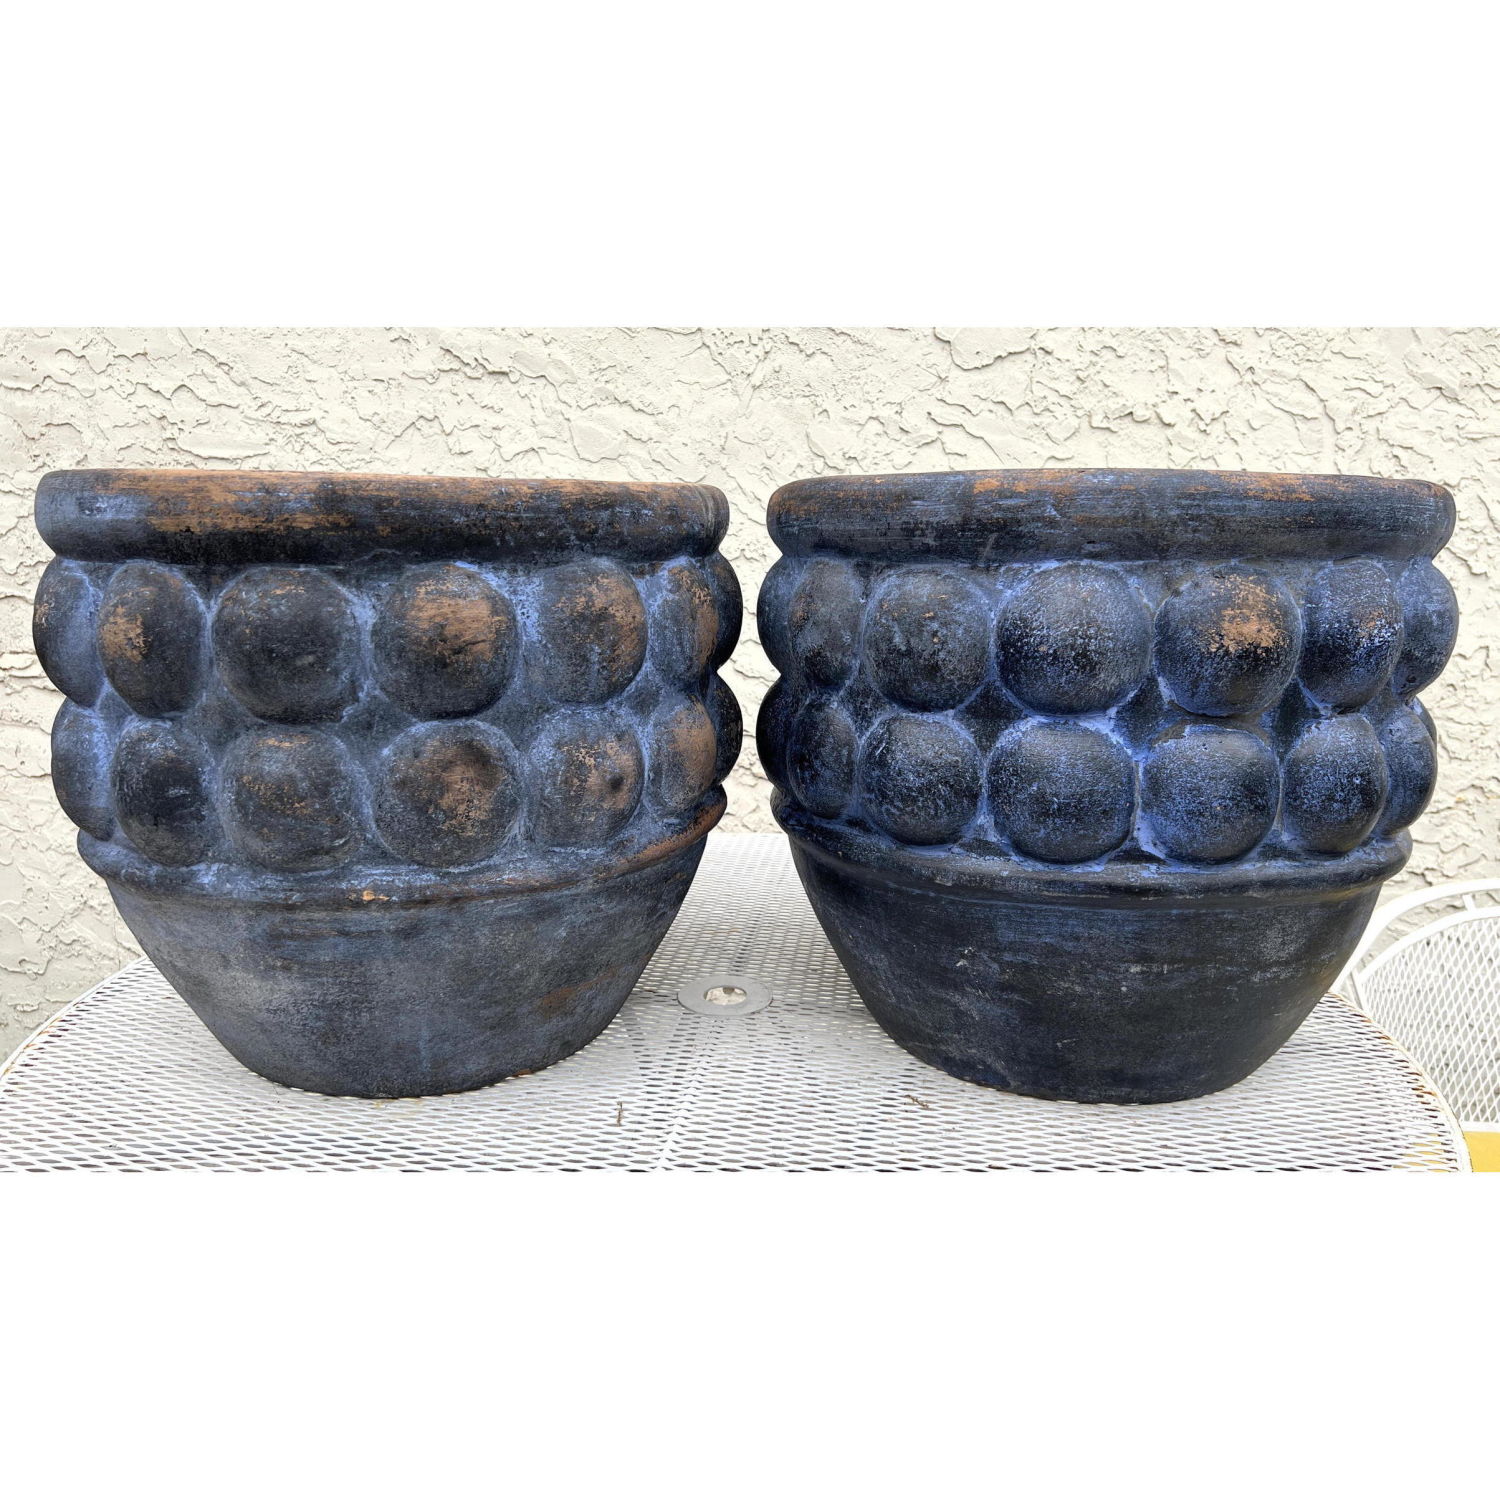 Pr. Large Blue Terracotta pots